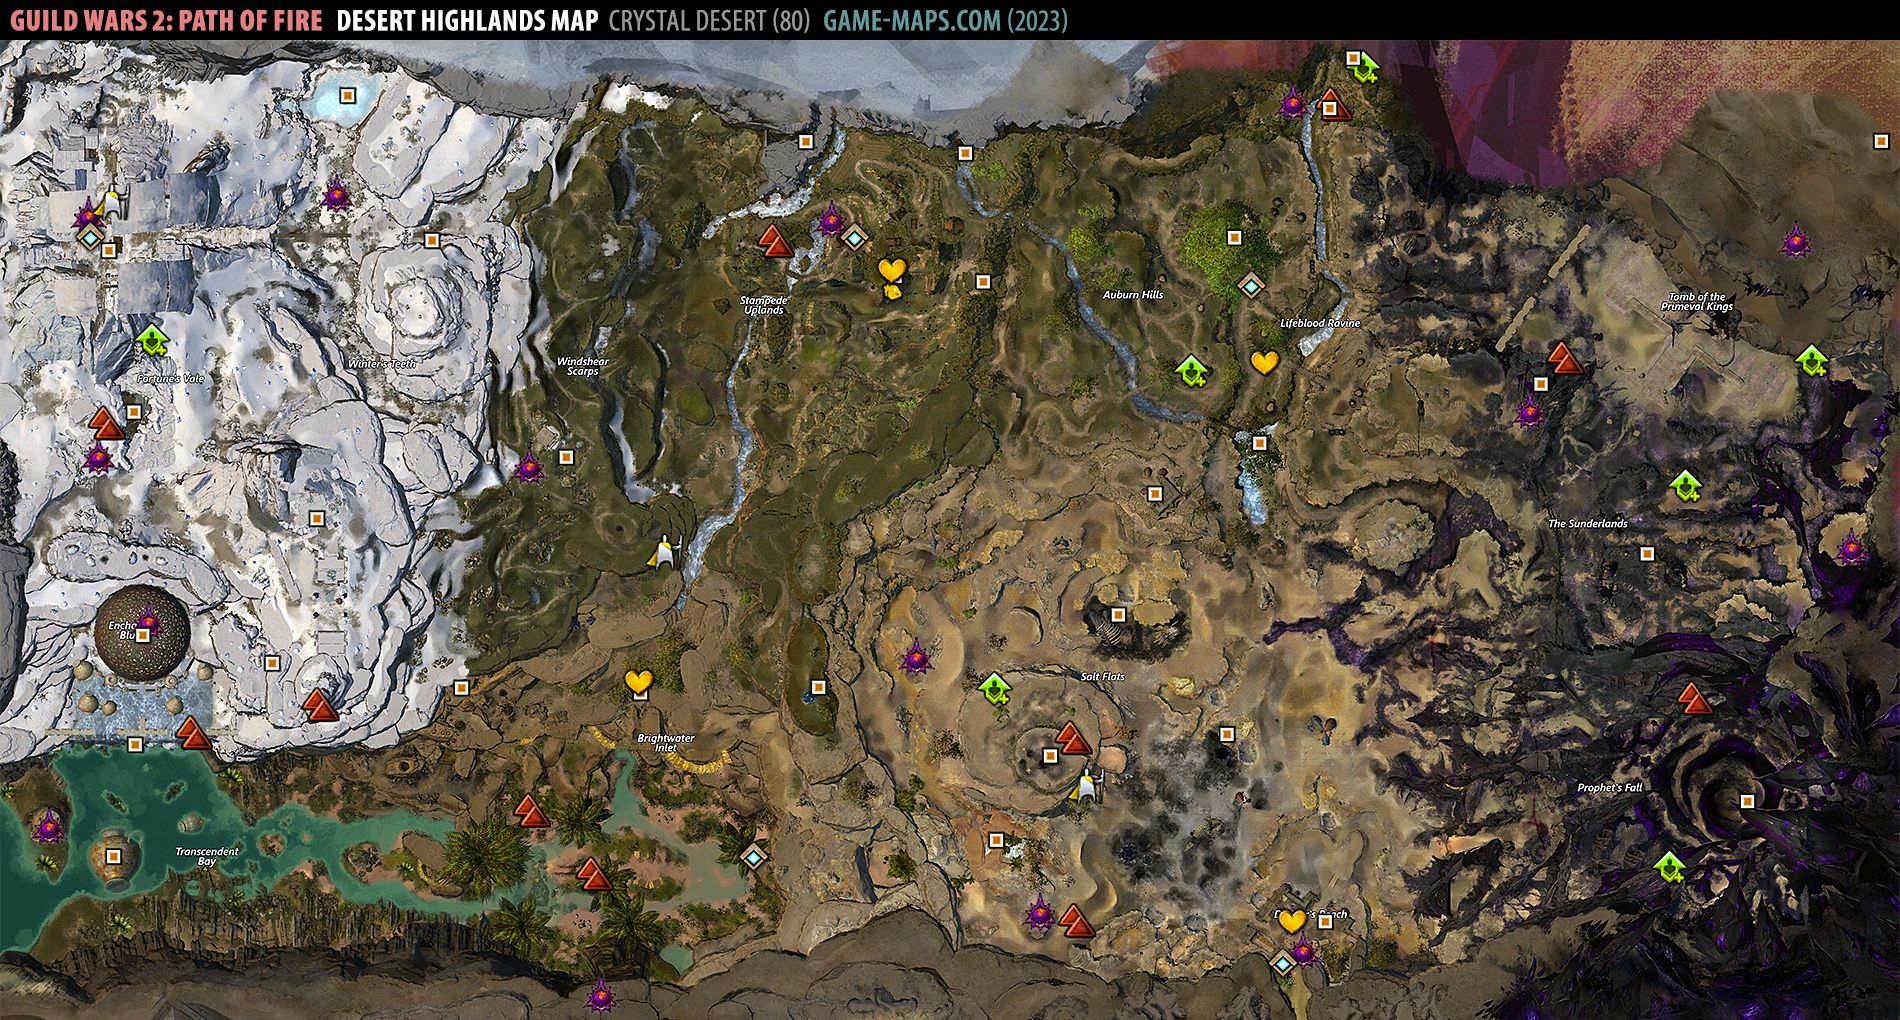 Desert Highlands Map for Guild Wars 2 (2019)